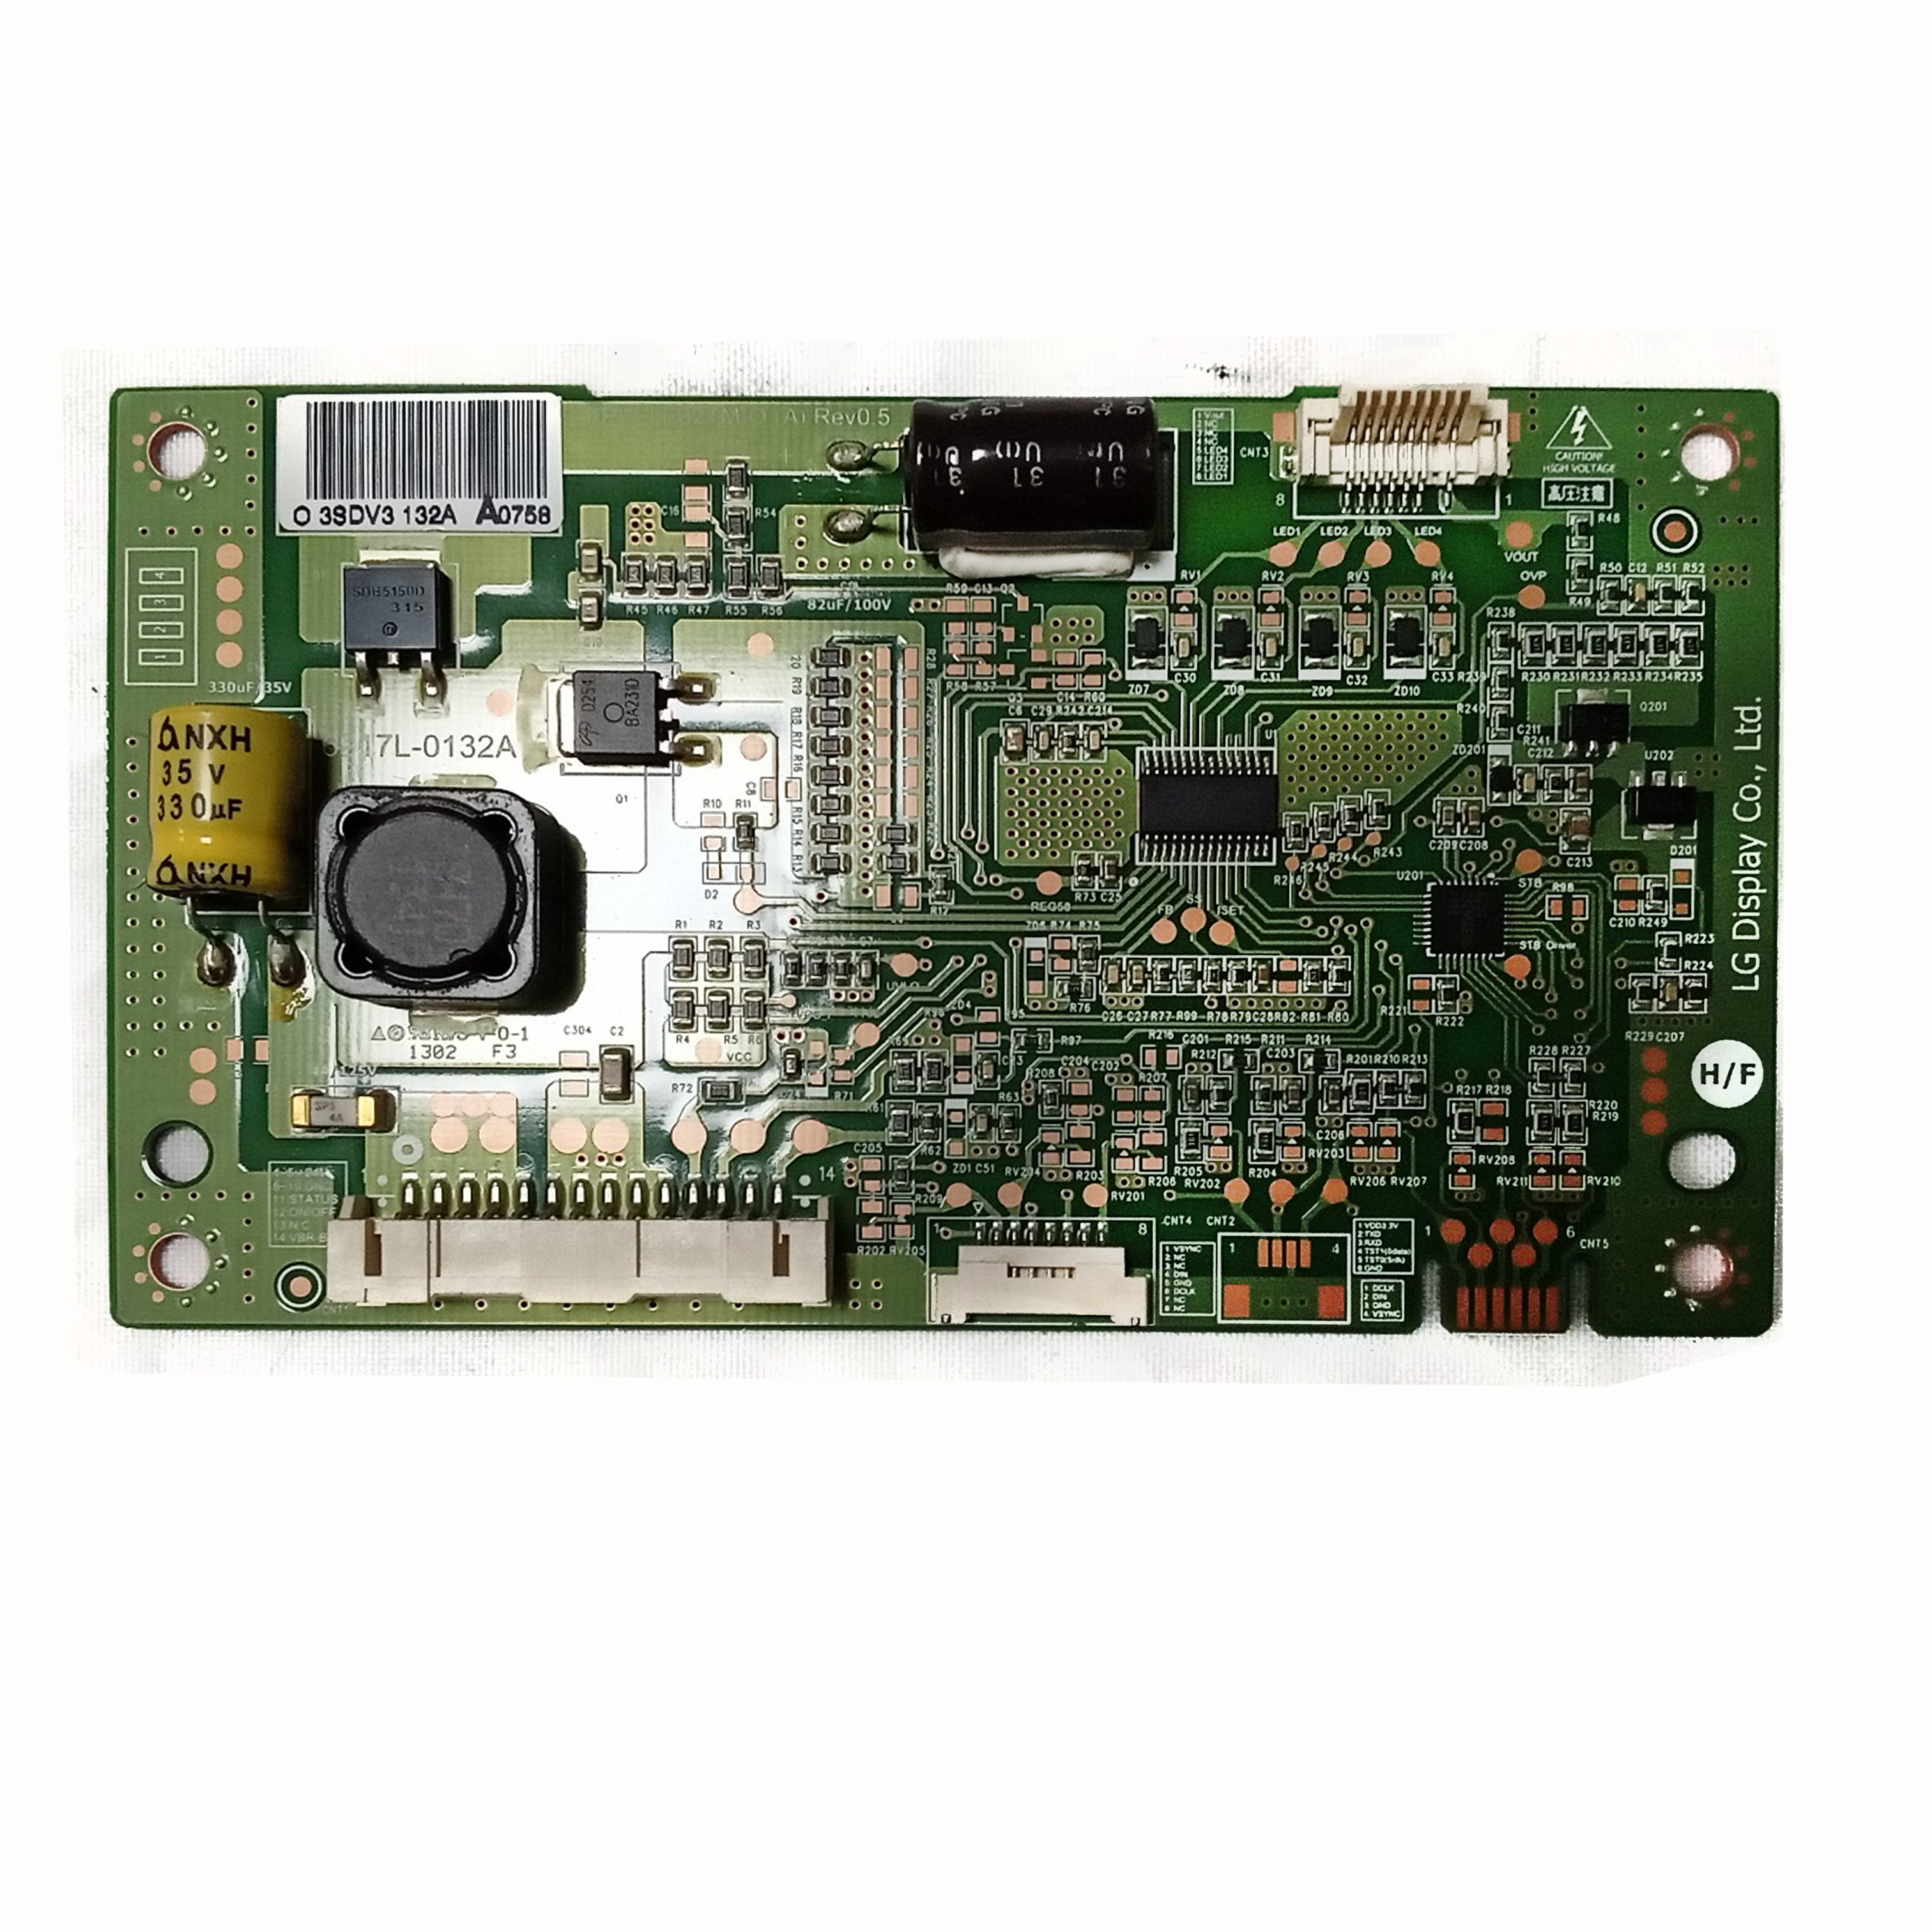 LED-драйвер PPW-LE32TM-0(A) REV0.5 телевизора LG 32LA660V, 32LA662V, 32LA667V